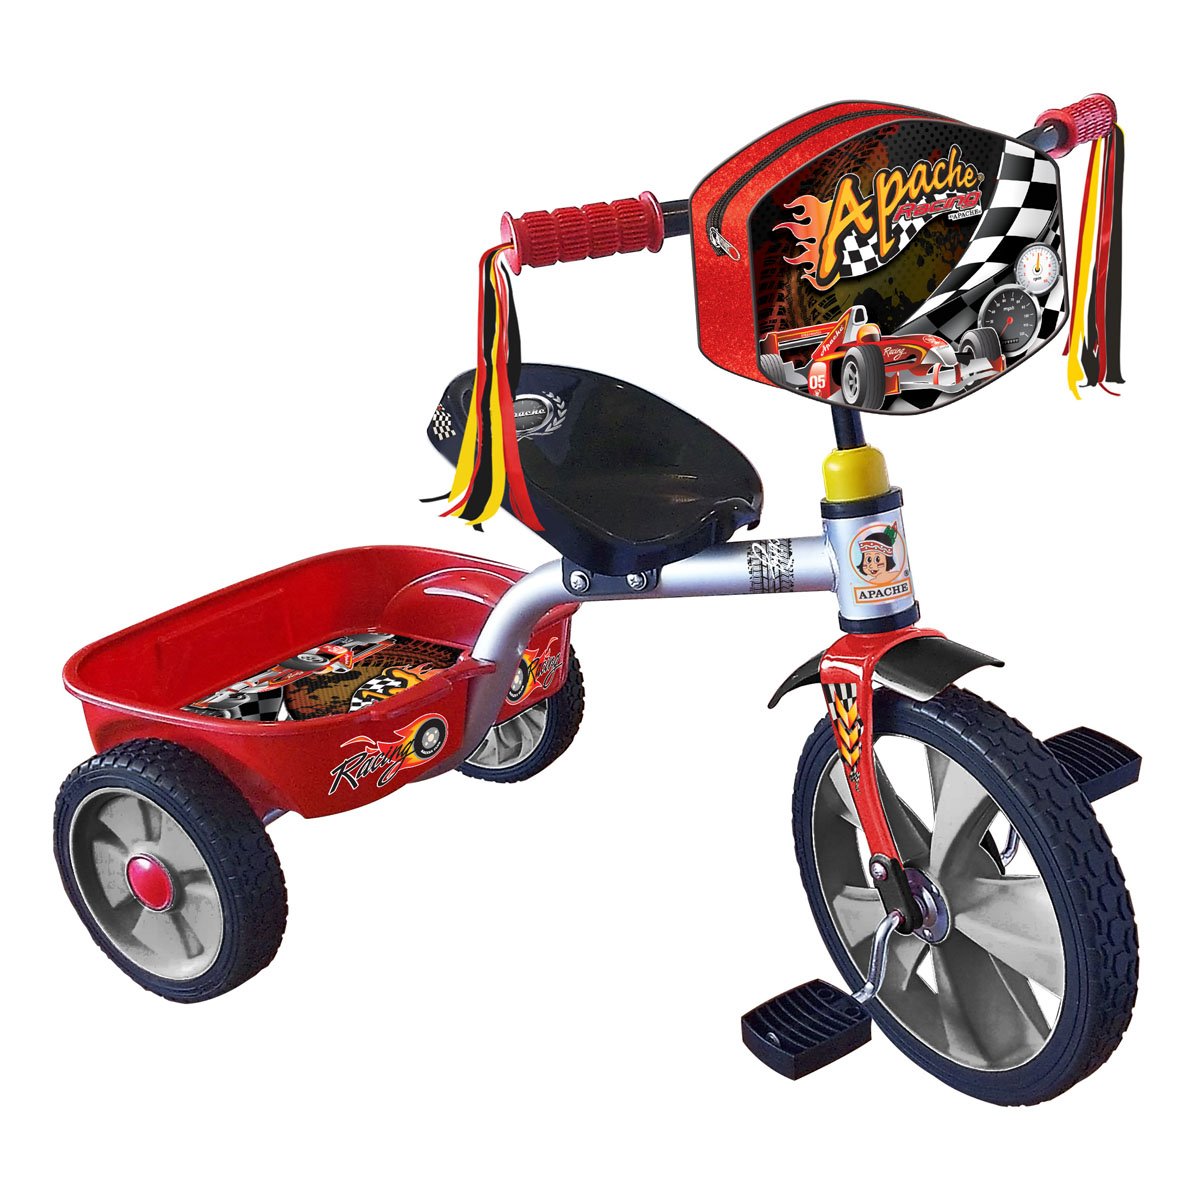 Triciclo Racing R14 Bicileyca